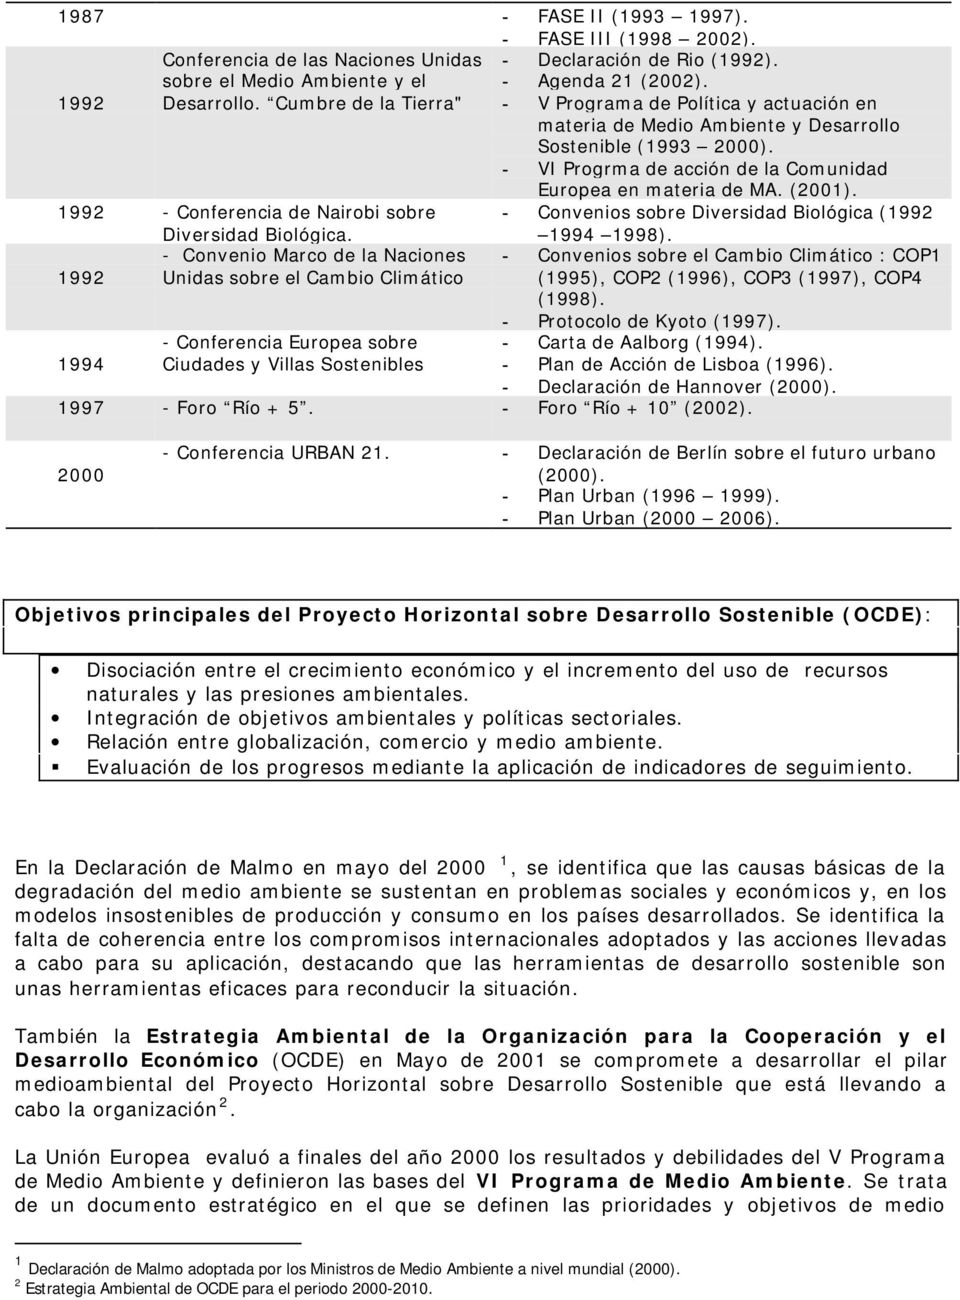 1992 - Cnferencia de Nairbi sbre Diversidad Bilógica. - Cnvenis sbre Diversidad Bilógica (1992 1994 1998).